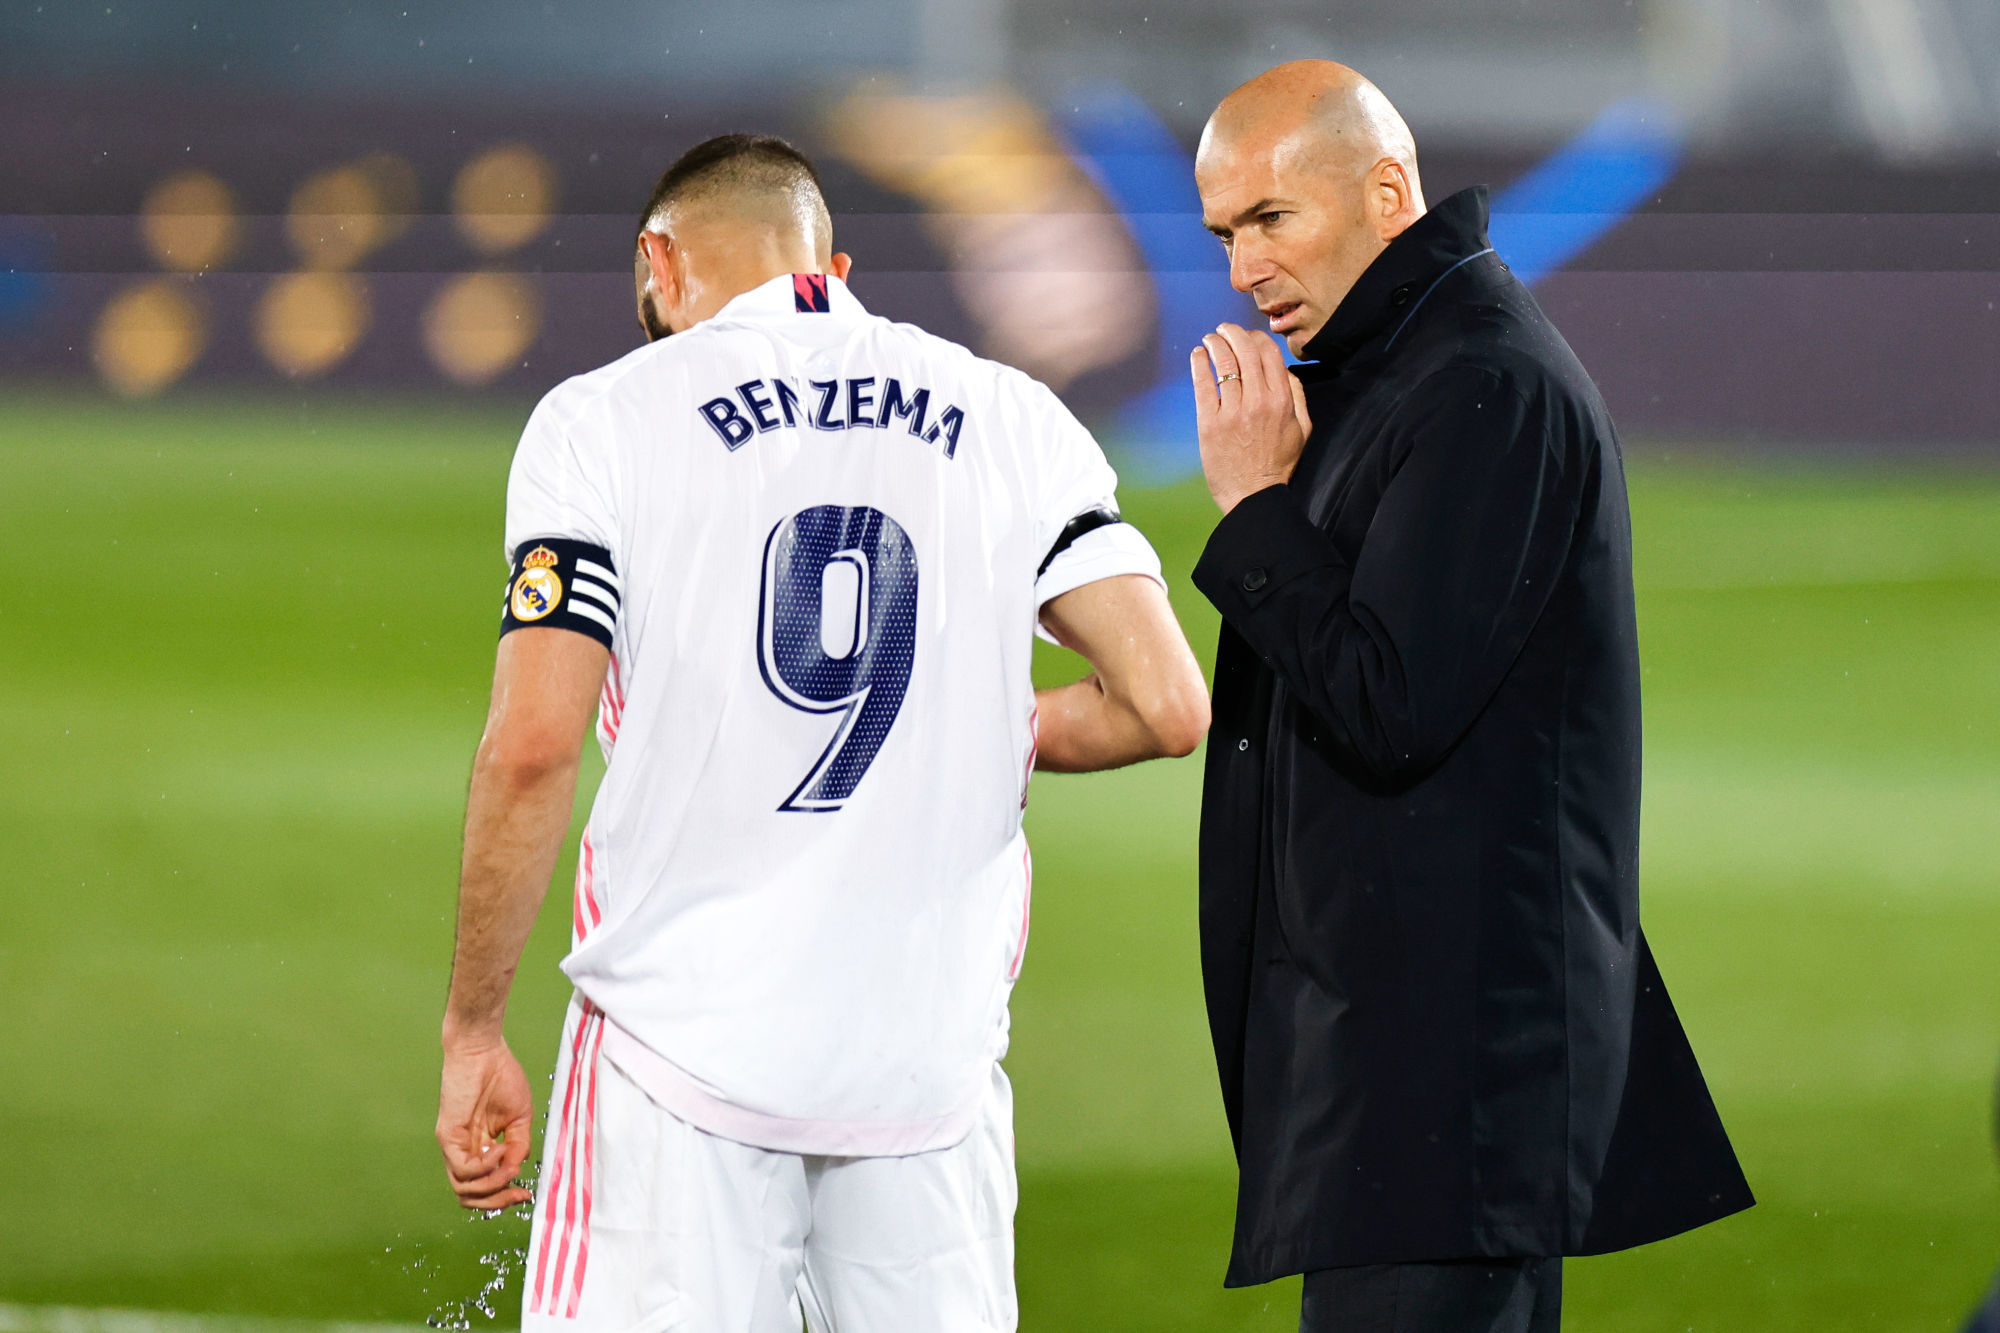 EdF : Retour de Benzema, Zidane sort enfin de son silence et menace